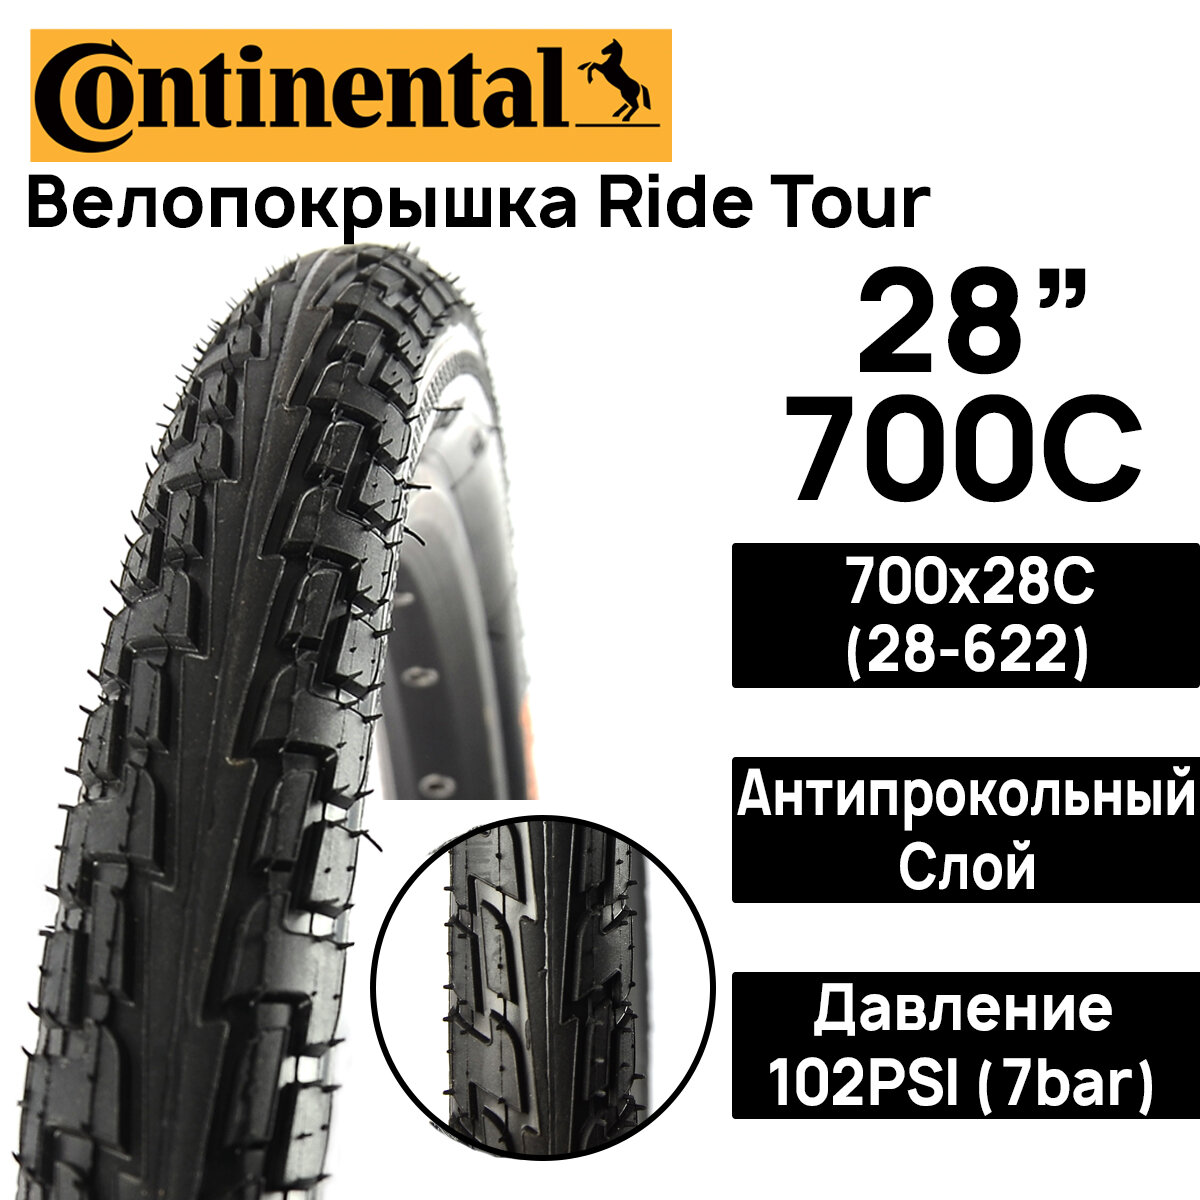 Покрышка для велосипеда Continental Ride Tour 28" (700x28), MAX BAR 7, PSI 102, жесткий корд, антипрокольный слой, черная